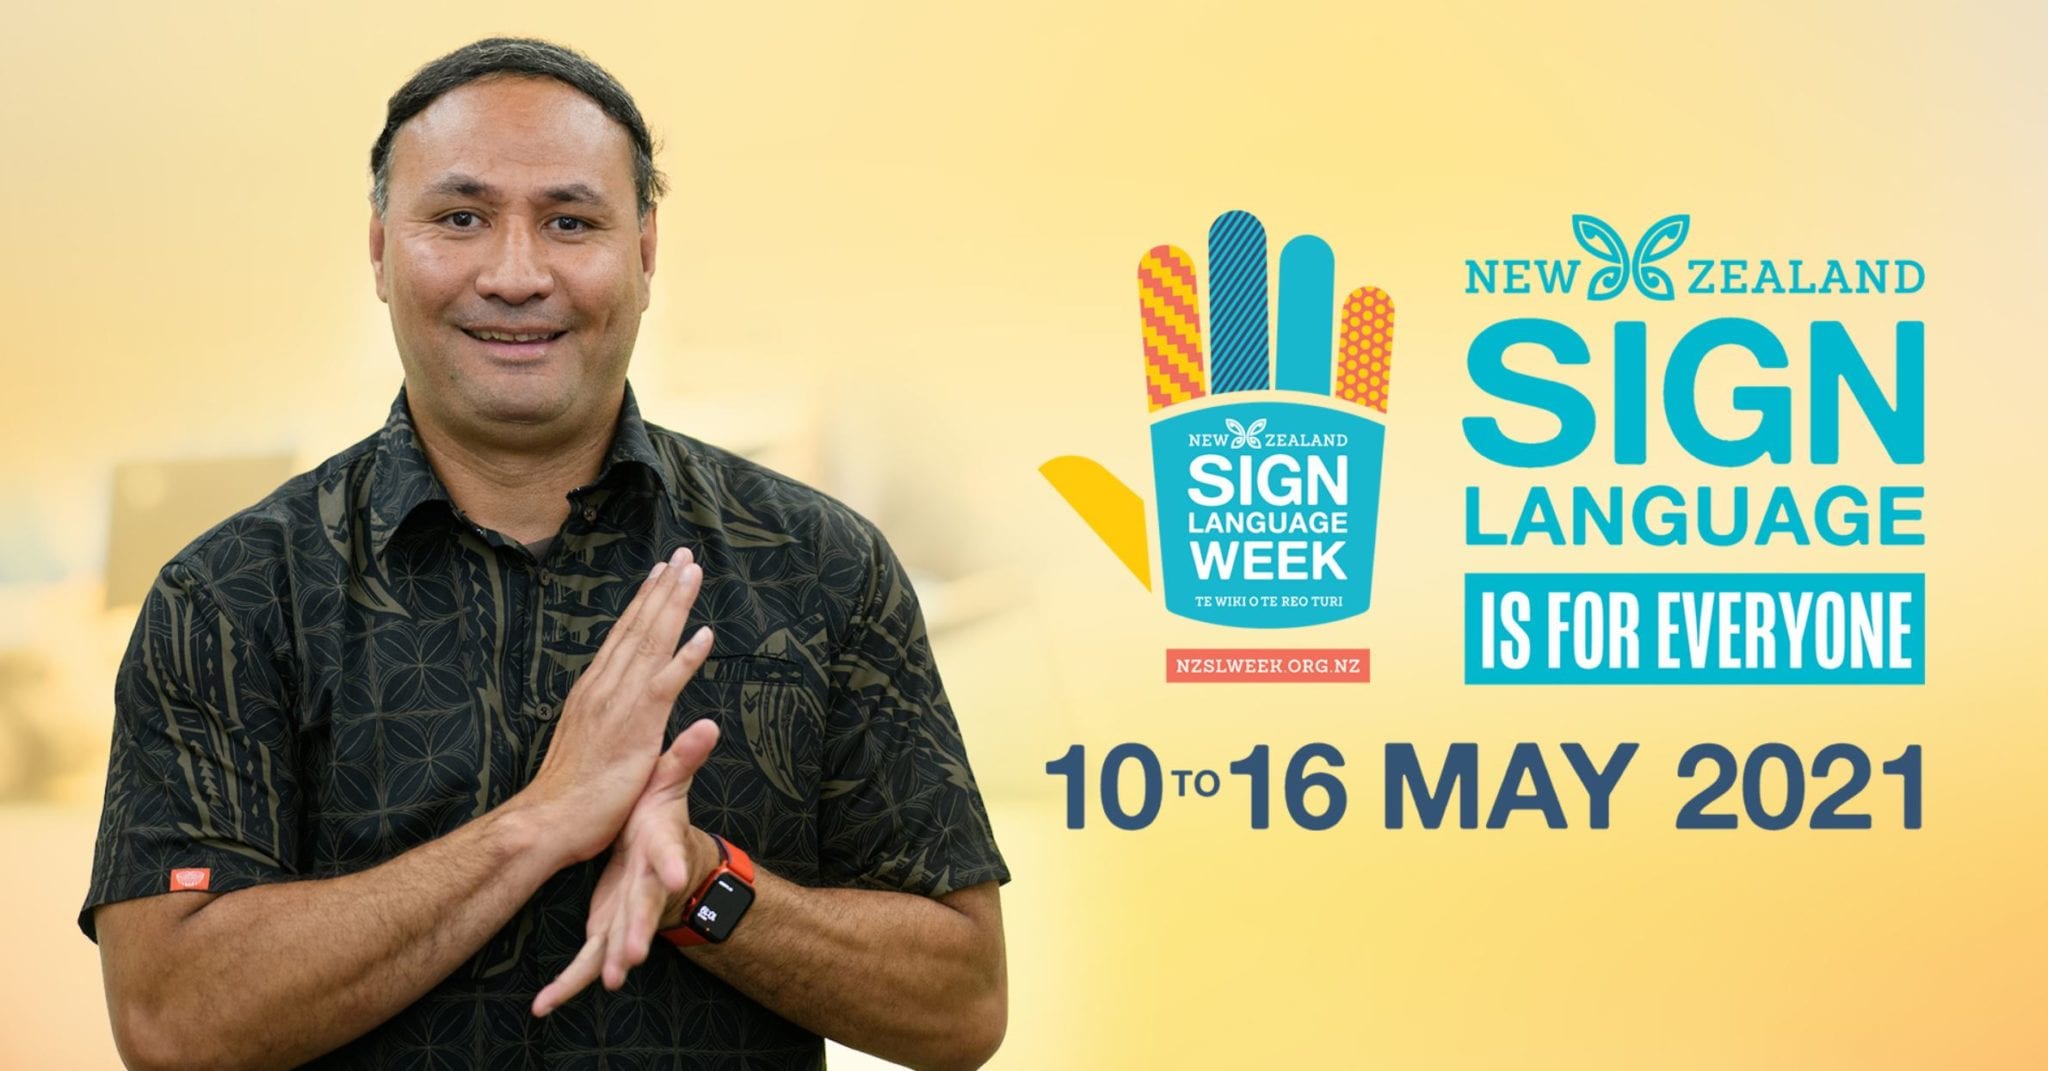 New Zealand Sign Language Week 2021